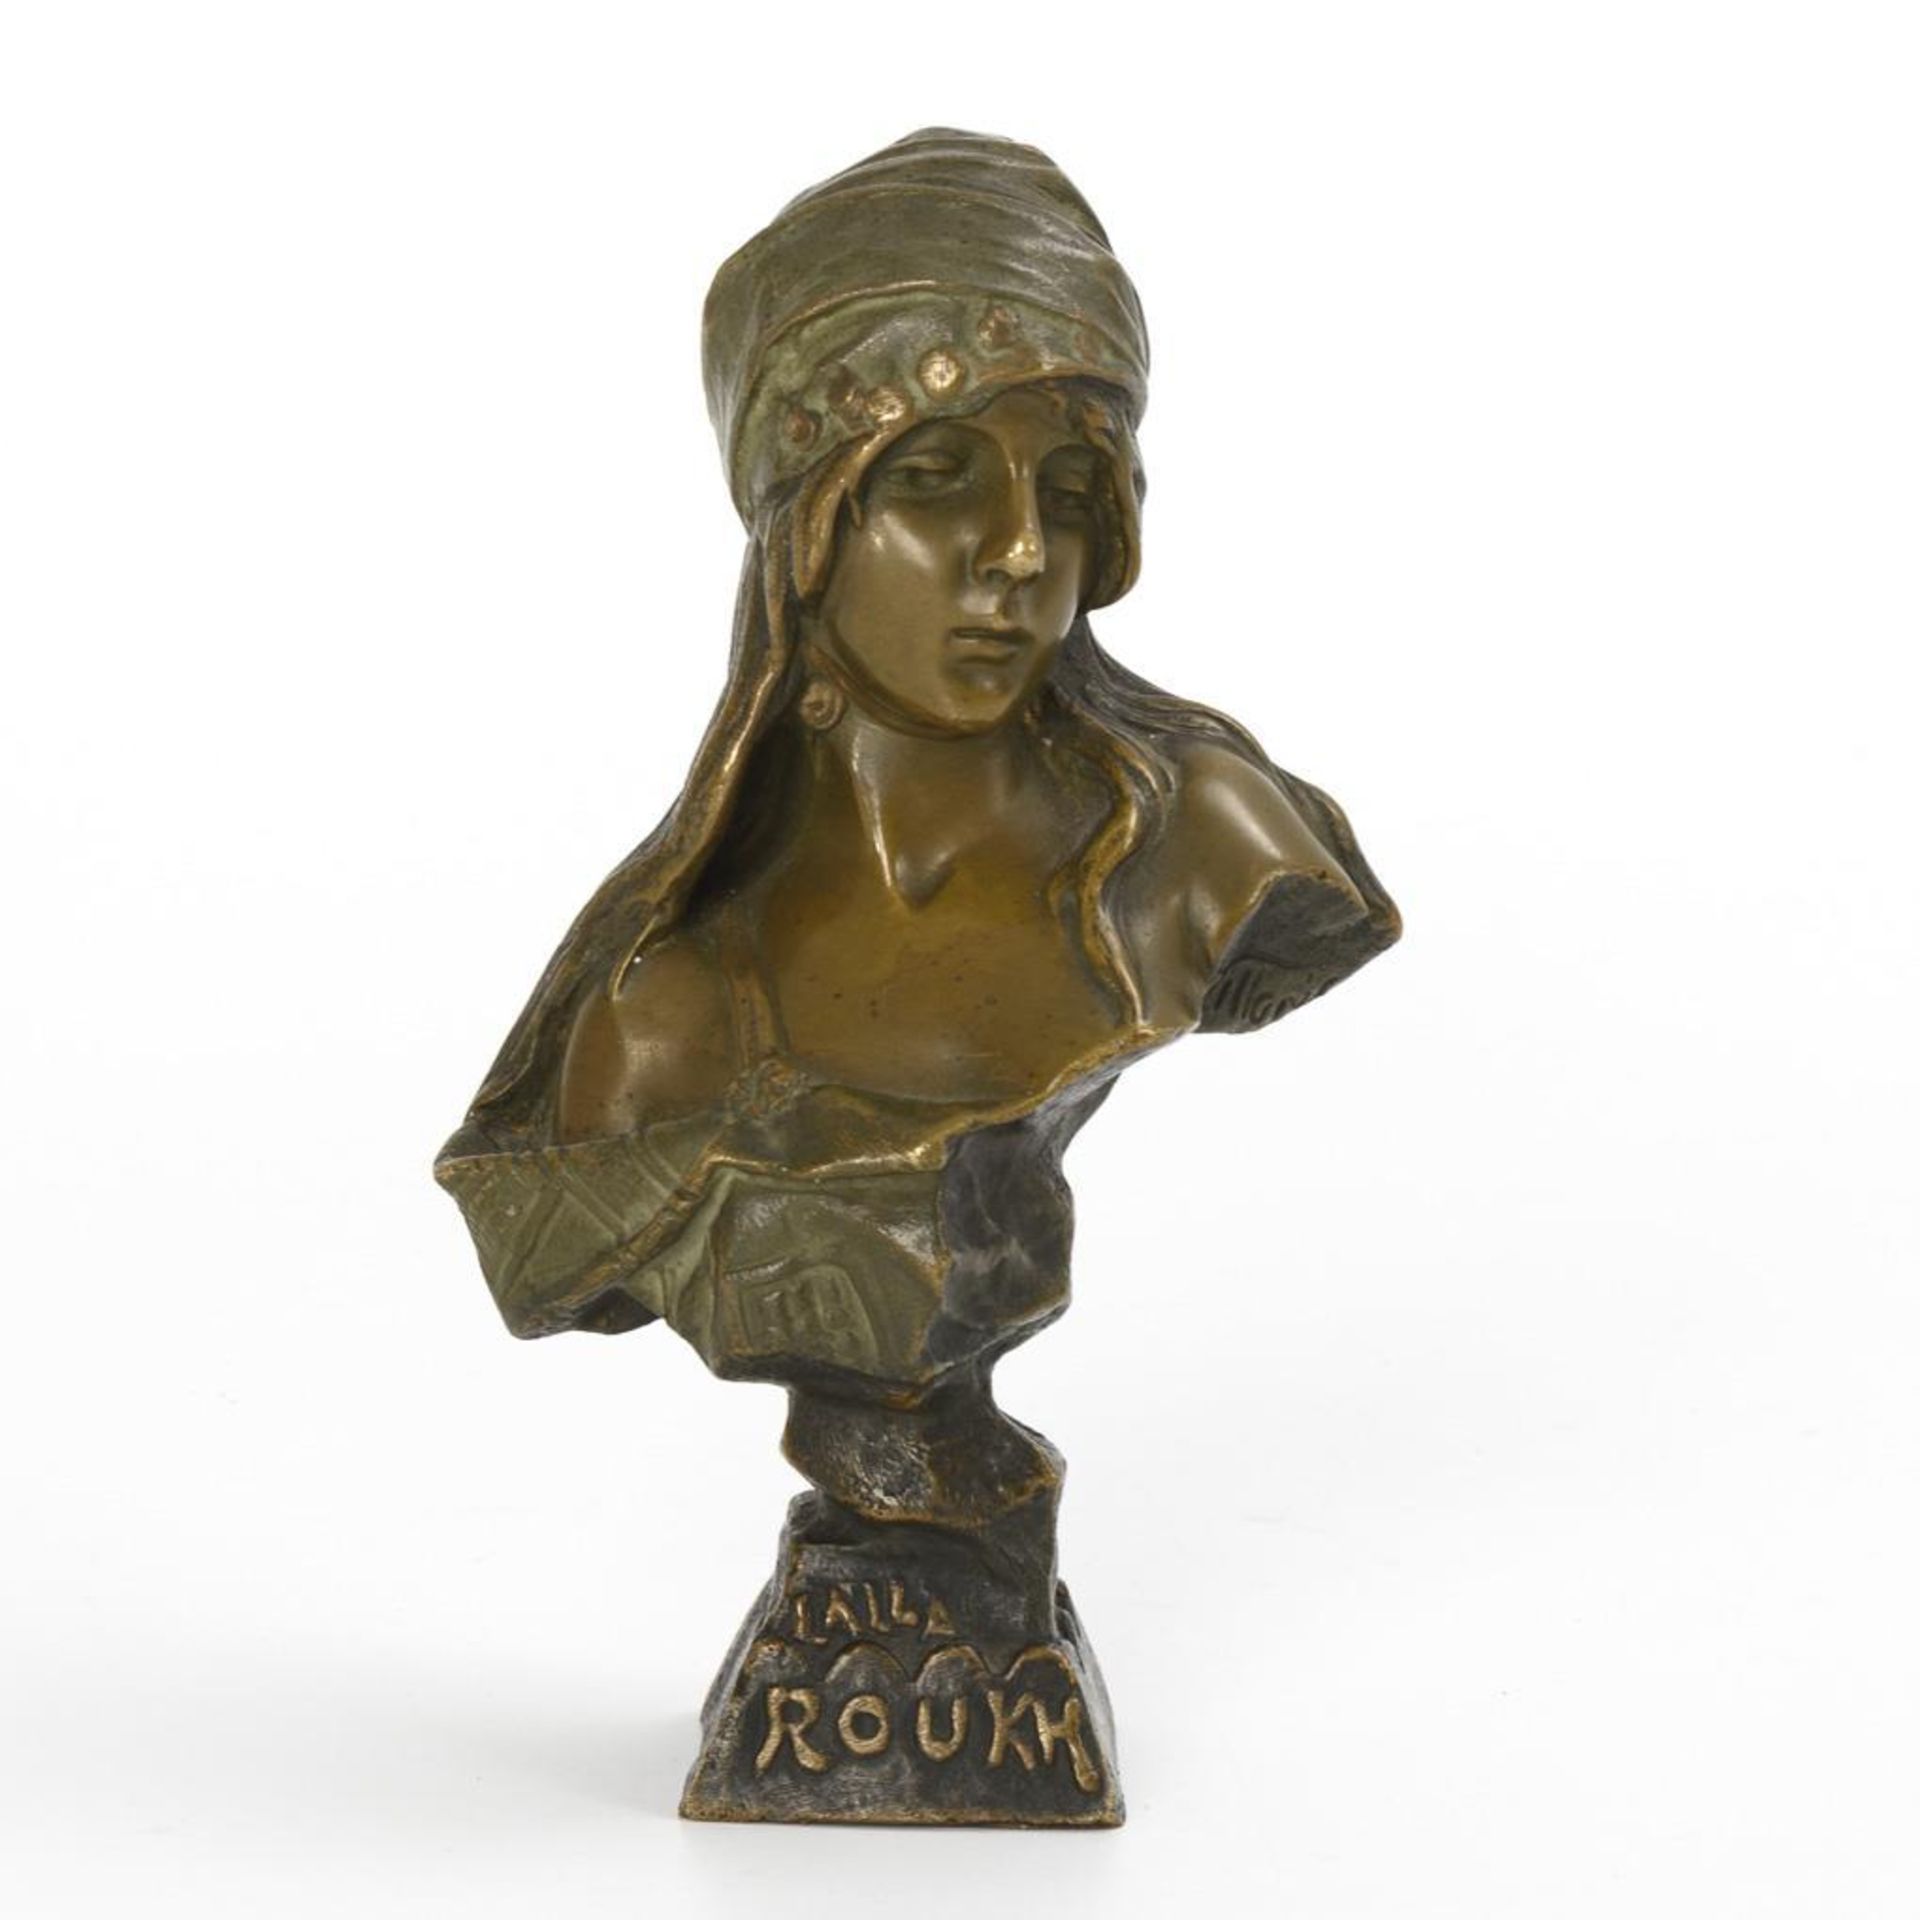 VILLANIS, Emmanuel (nach) (1858 Lille - 1914 Paris). Bronze-Büste: "Laila Roukh".